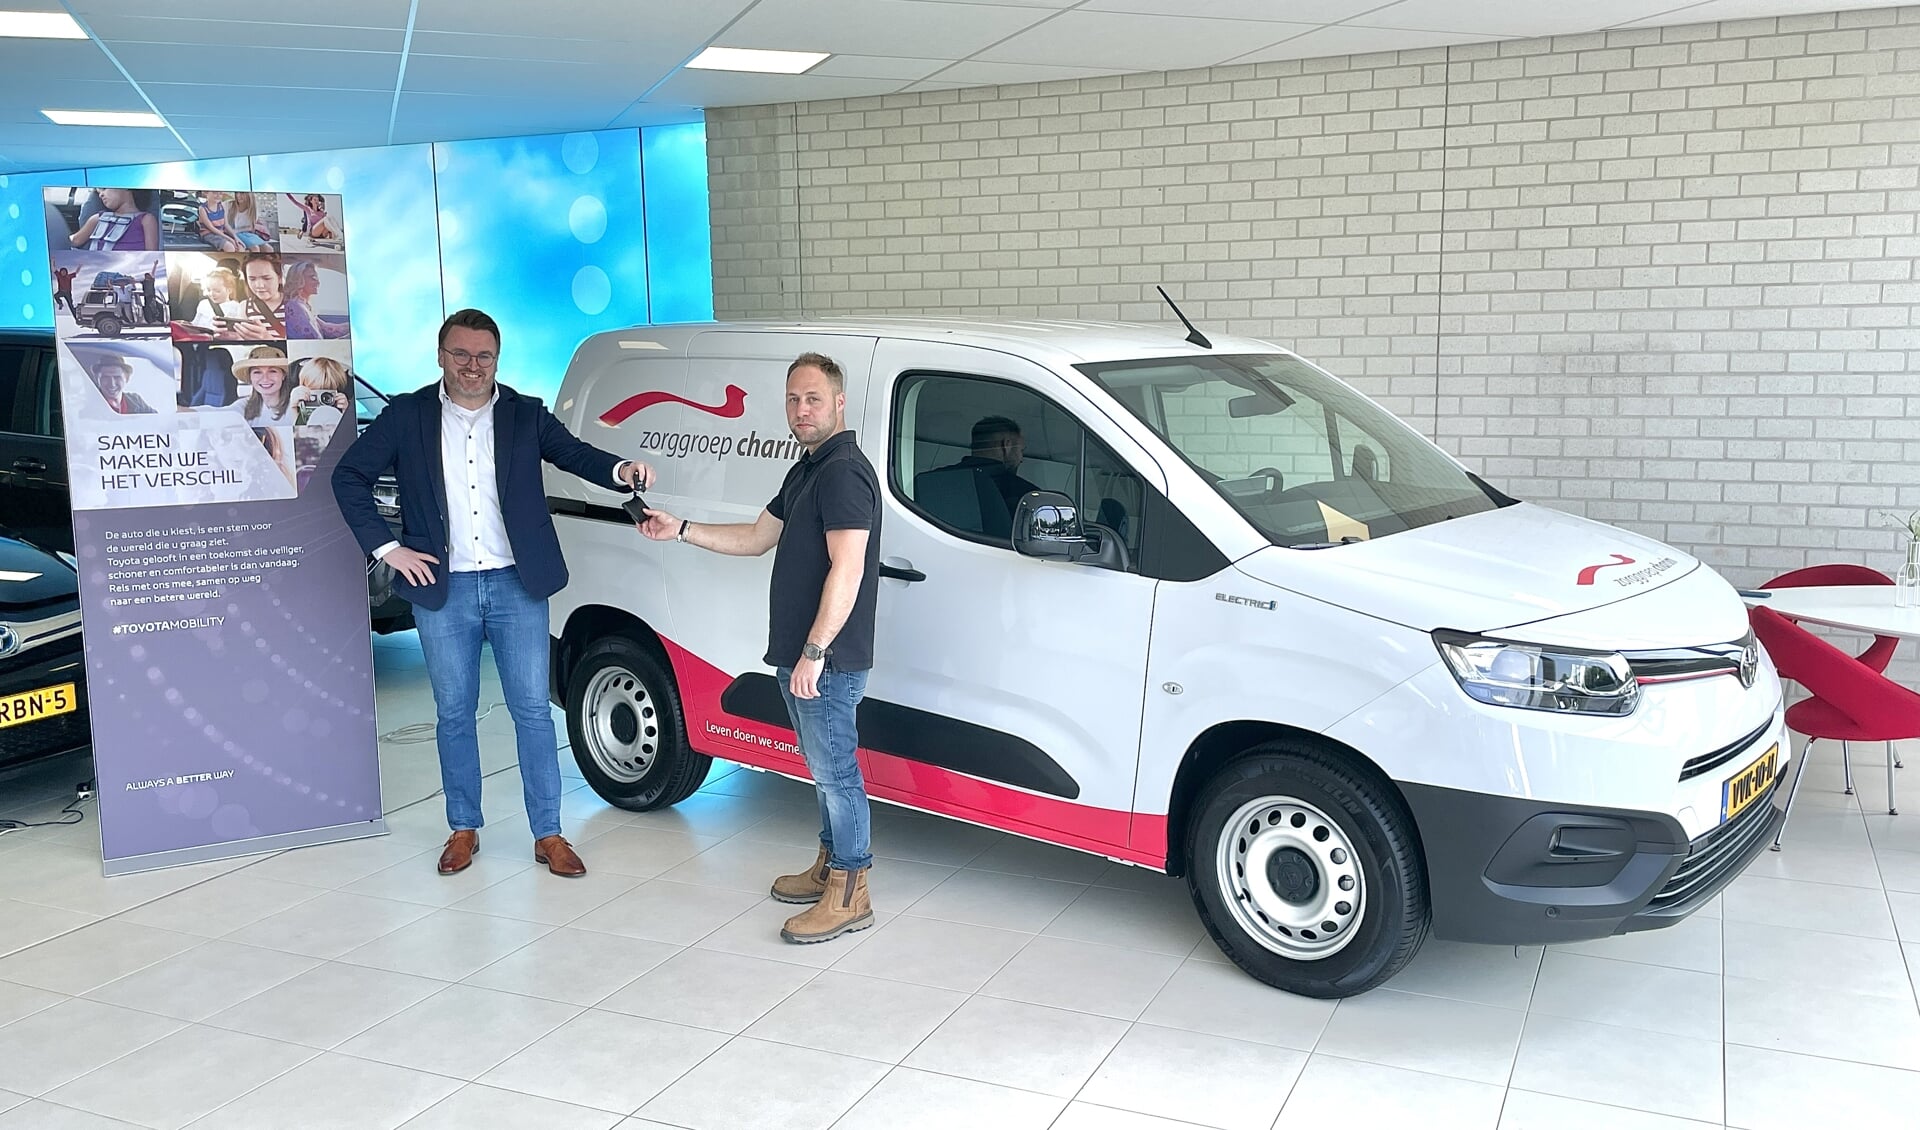 Medewerker technische dienst Melvin van Zorggroep Charim ontvangt van Geert-Jan van Toyota garage Gent de sleutel van de nieuwe elektrische Toyota.